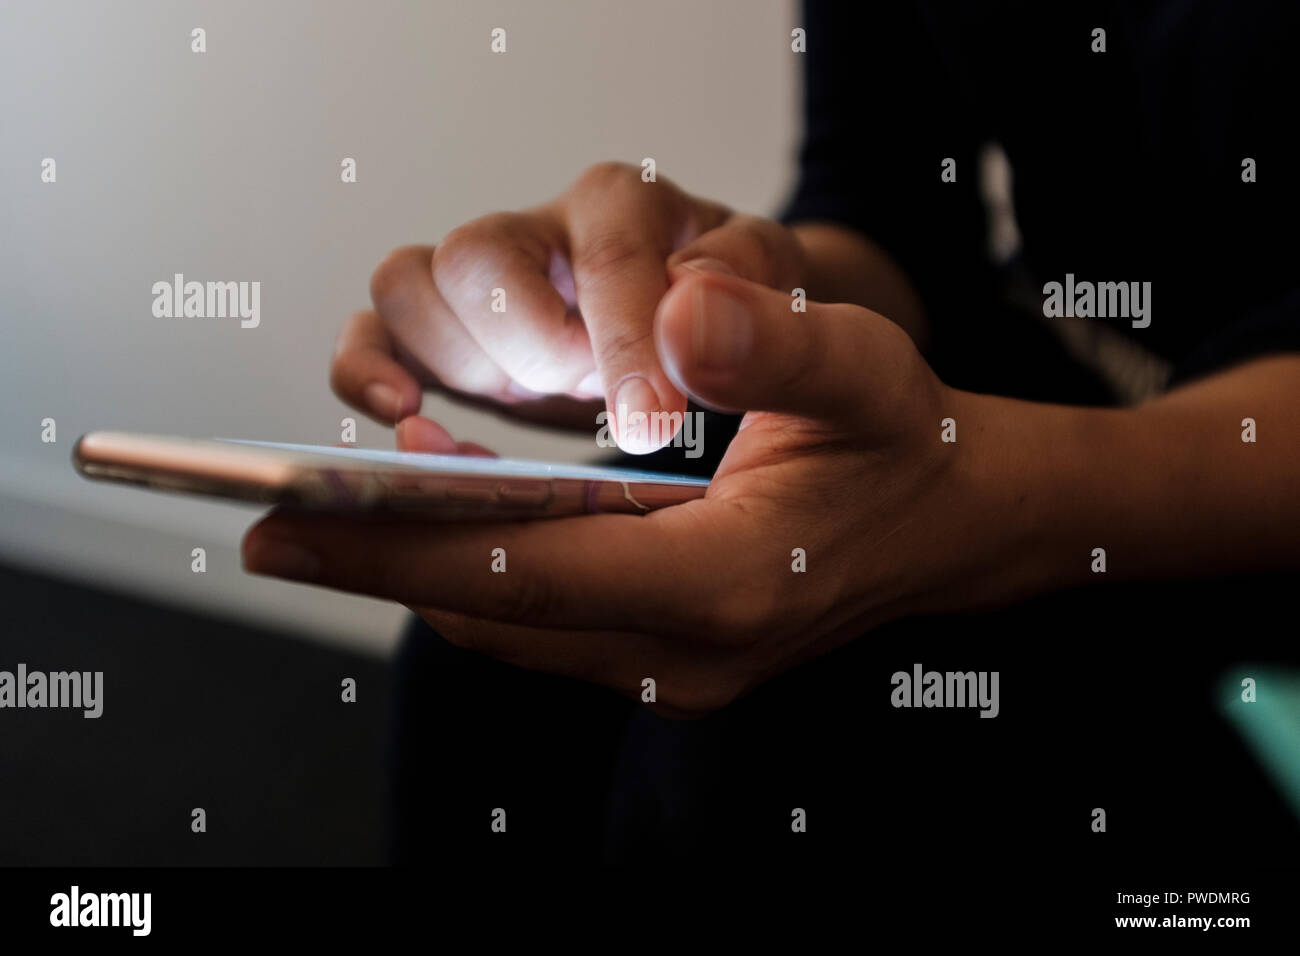 Selektiver Fokus, Nahaufnahme von einer Frau mit einem Touchscreen smartphone Stockfoto